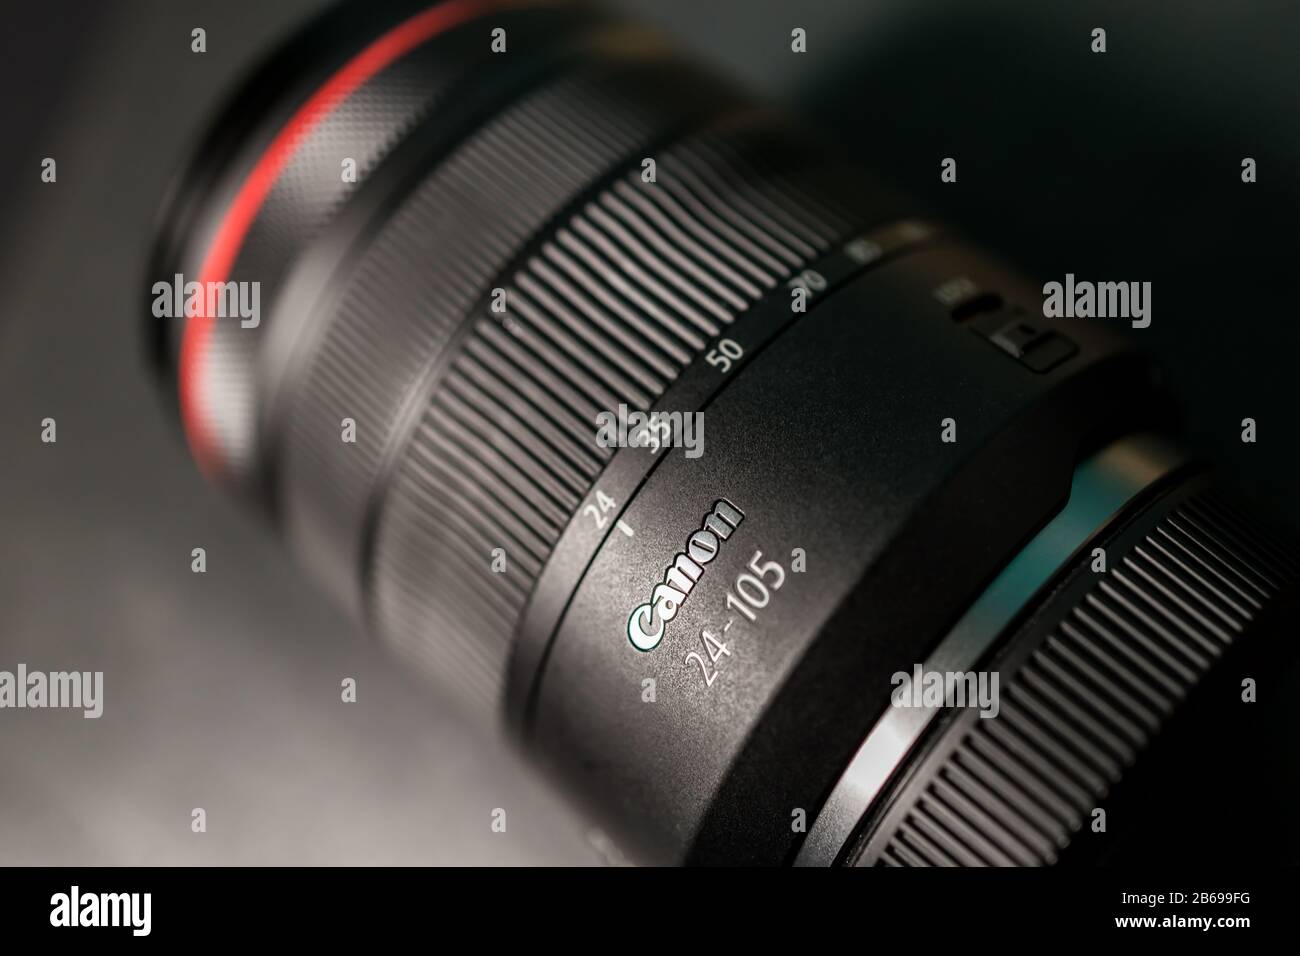 Londra - 04 MARZO 2020: Obiettivo zoom RF Canon su sfondo nero scuro Foto Stock